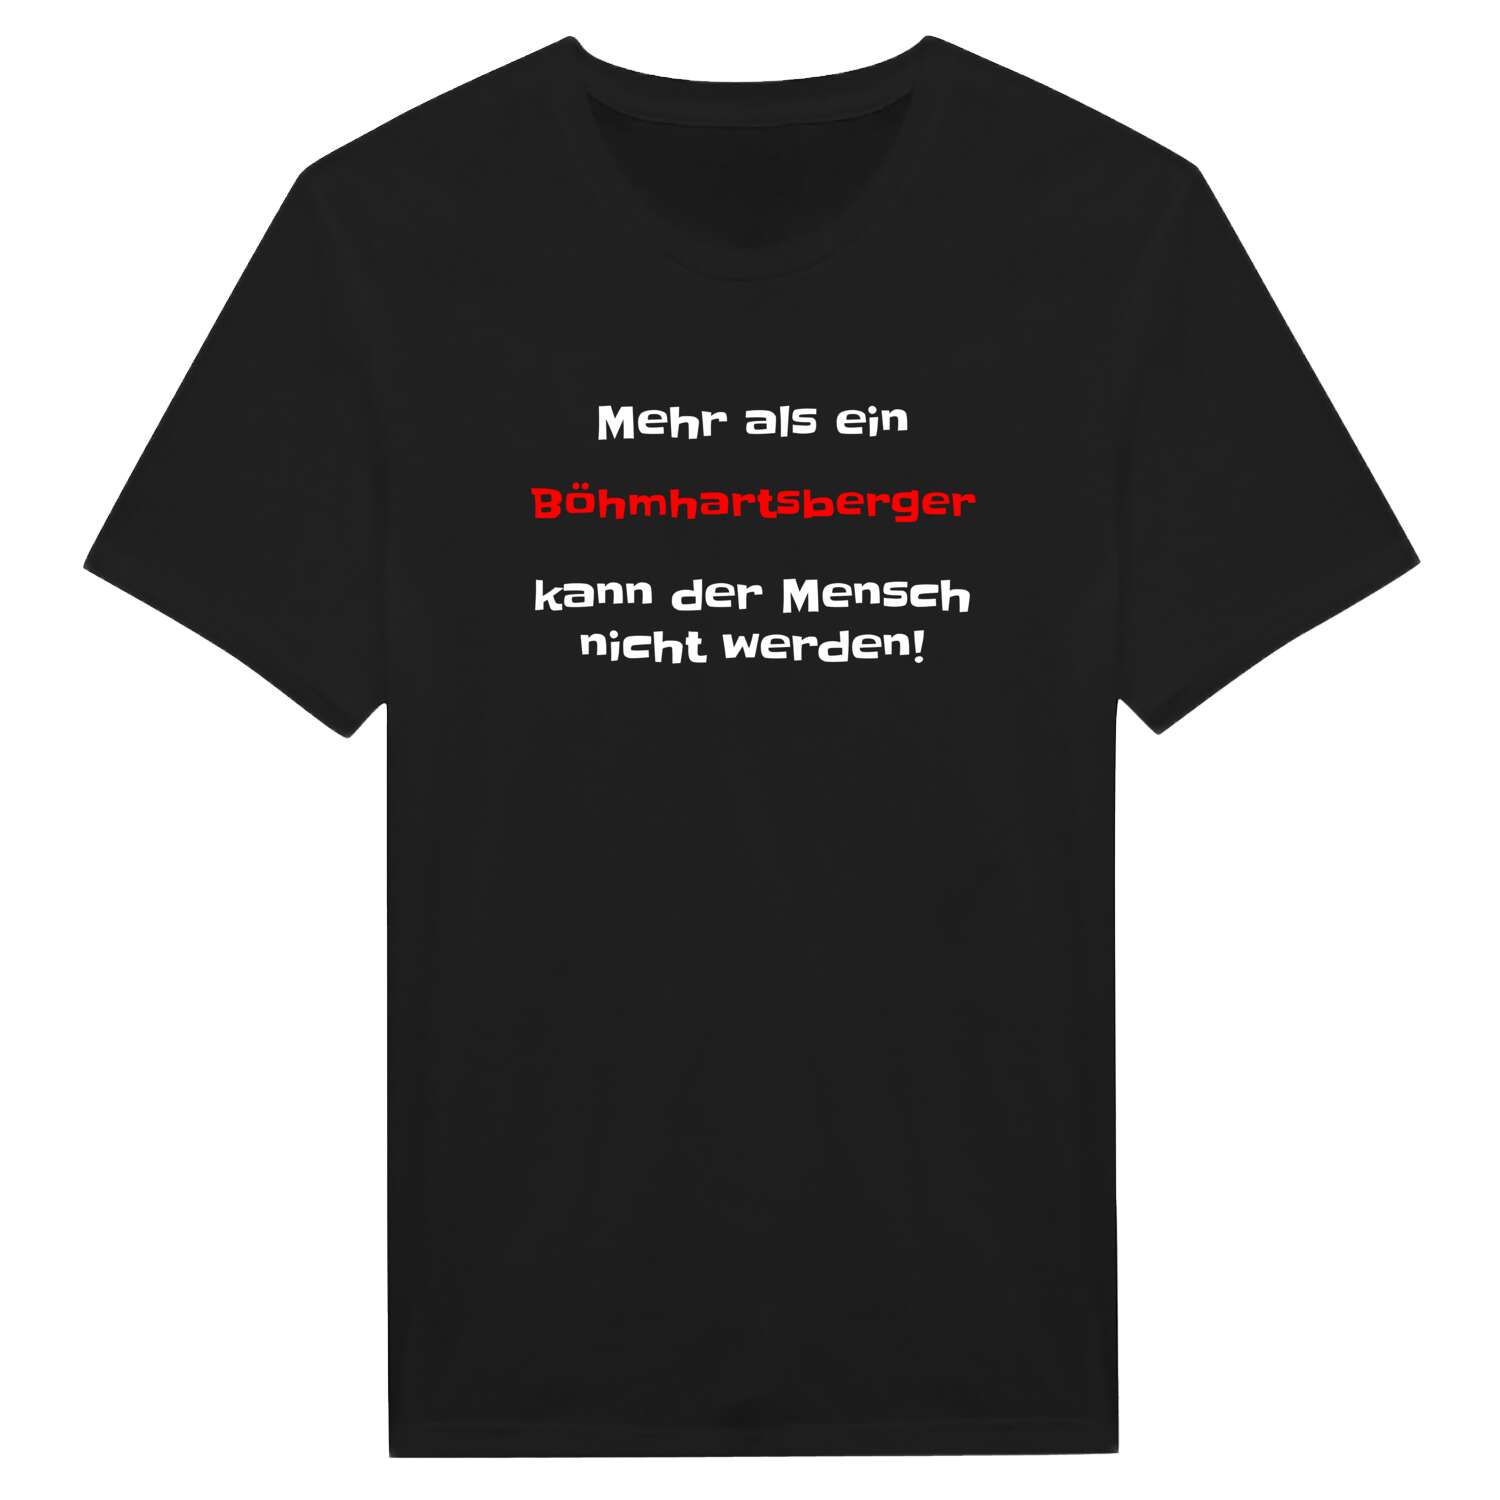 Böhmhartsberg T-Shirt »Mehr als ein«